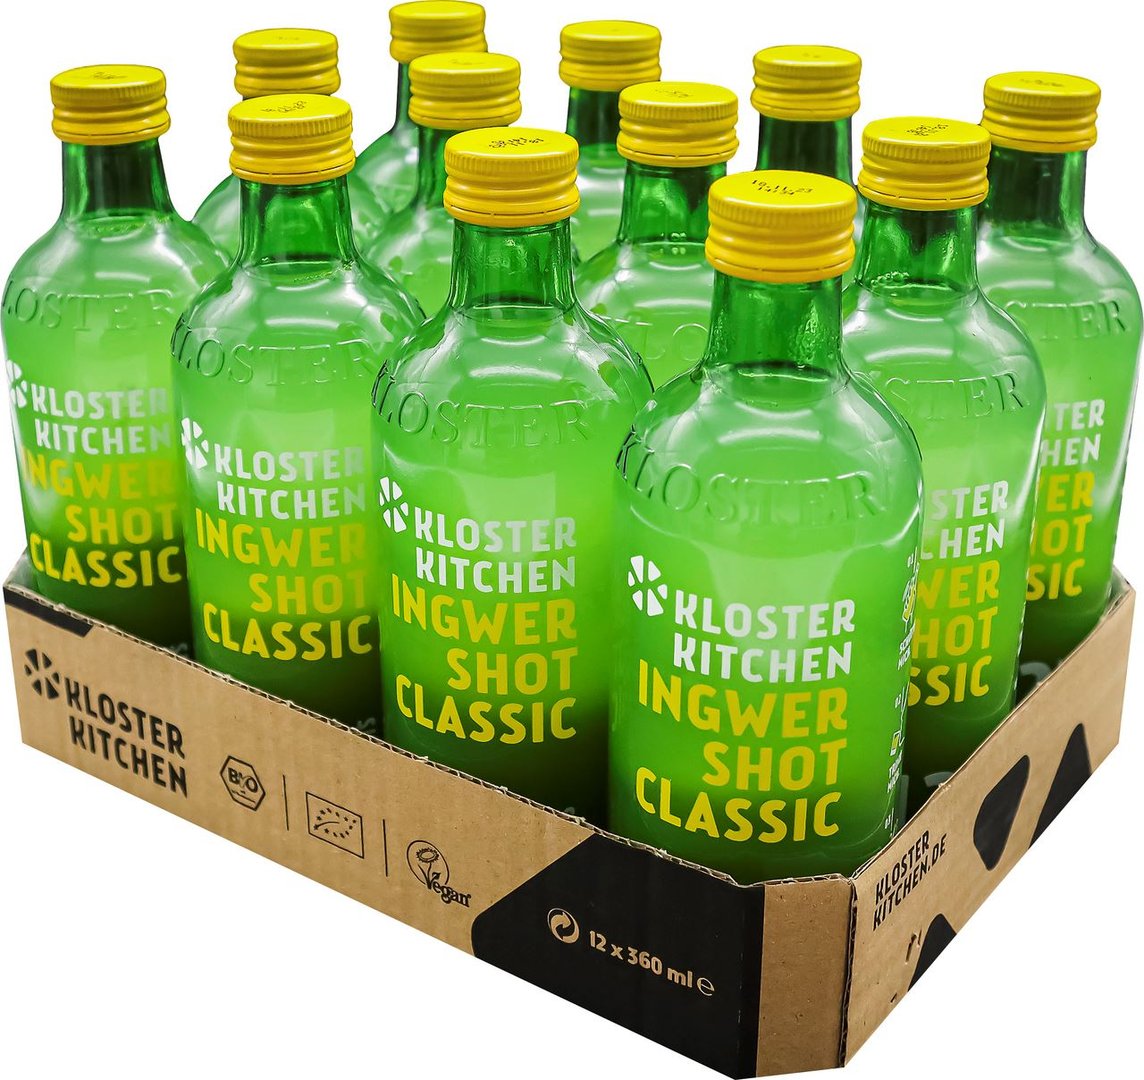 Kloster Kitchen - Bio Ingwershot Classic 12 Shots, Glas Einweg - 360 ml Flasche